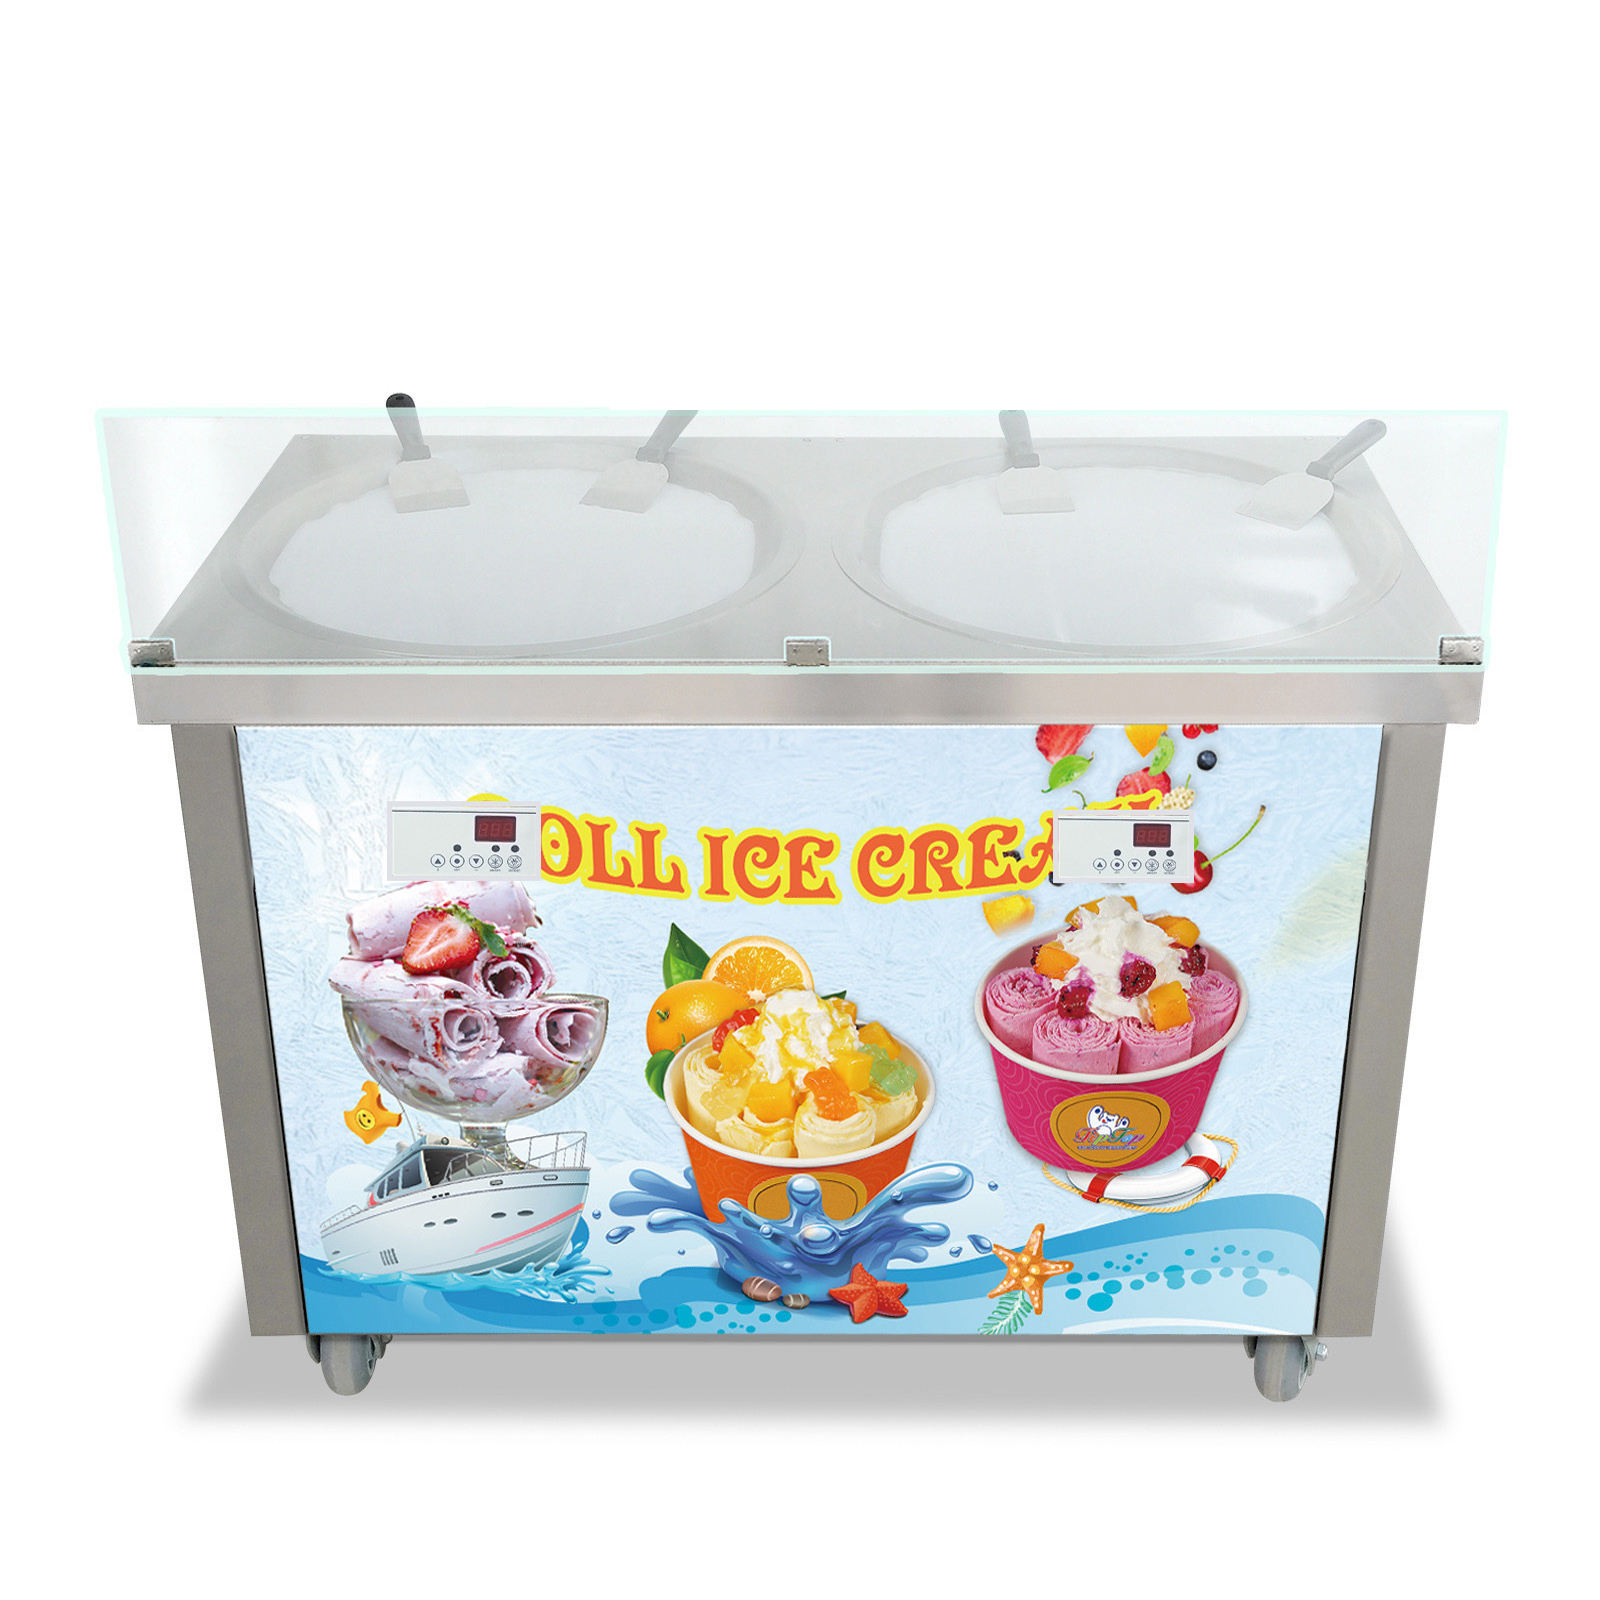 New Double Round Pan Fried Ice Cream Machine Rolled Ice Cream Maker Fry Ice Cream Roll Machine - Fried Ice Cream Machine - 1